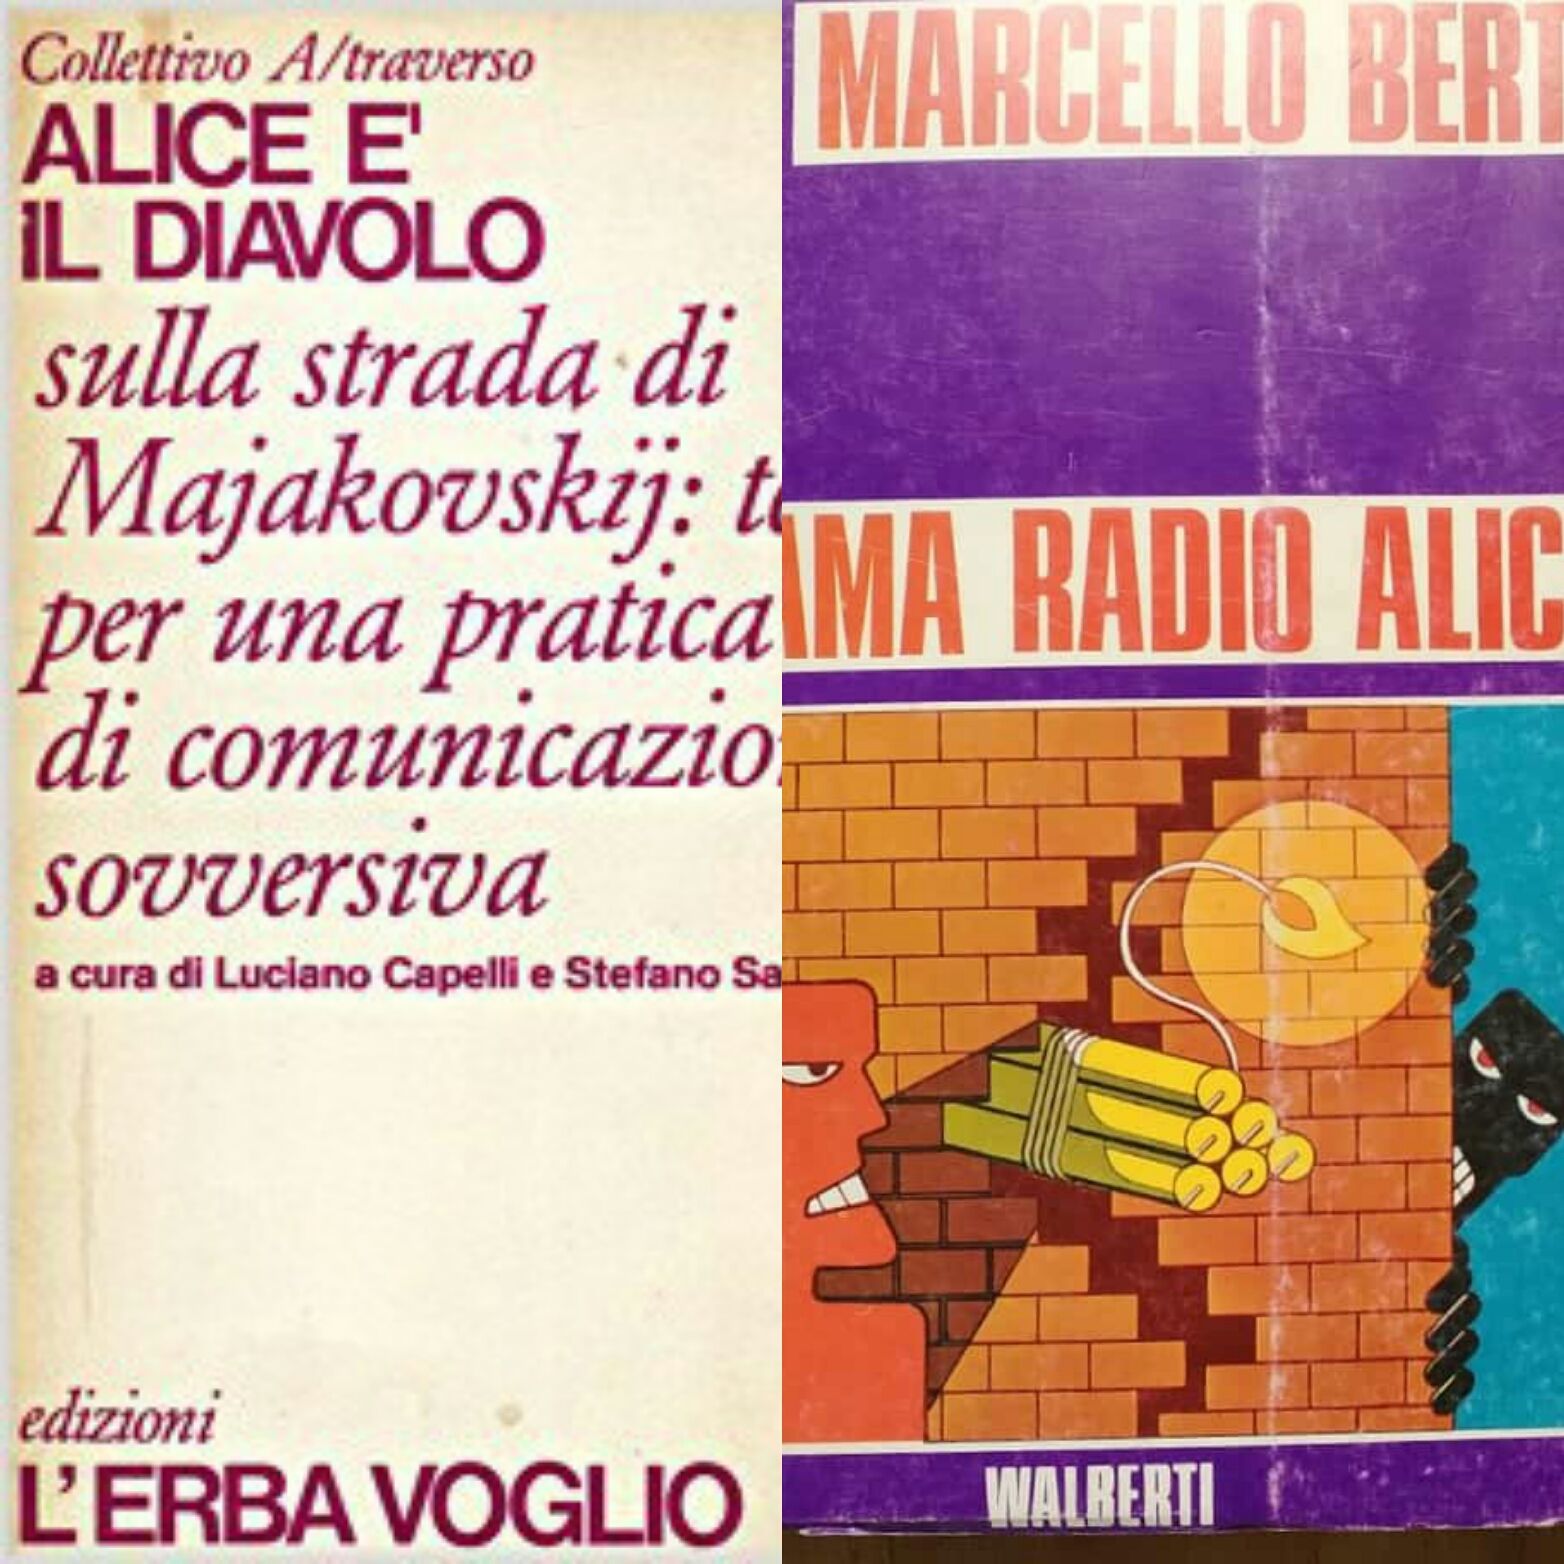 “Chiama Radio Alice” e “Alice è il Diavolo”: due libri sovversivi sulle frequenze libere